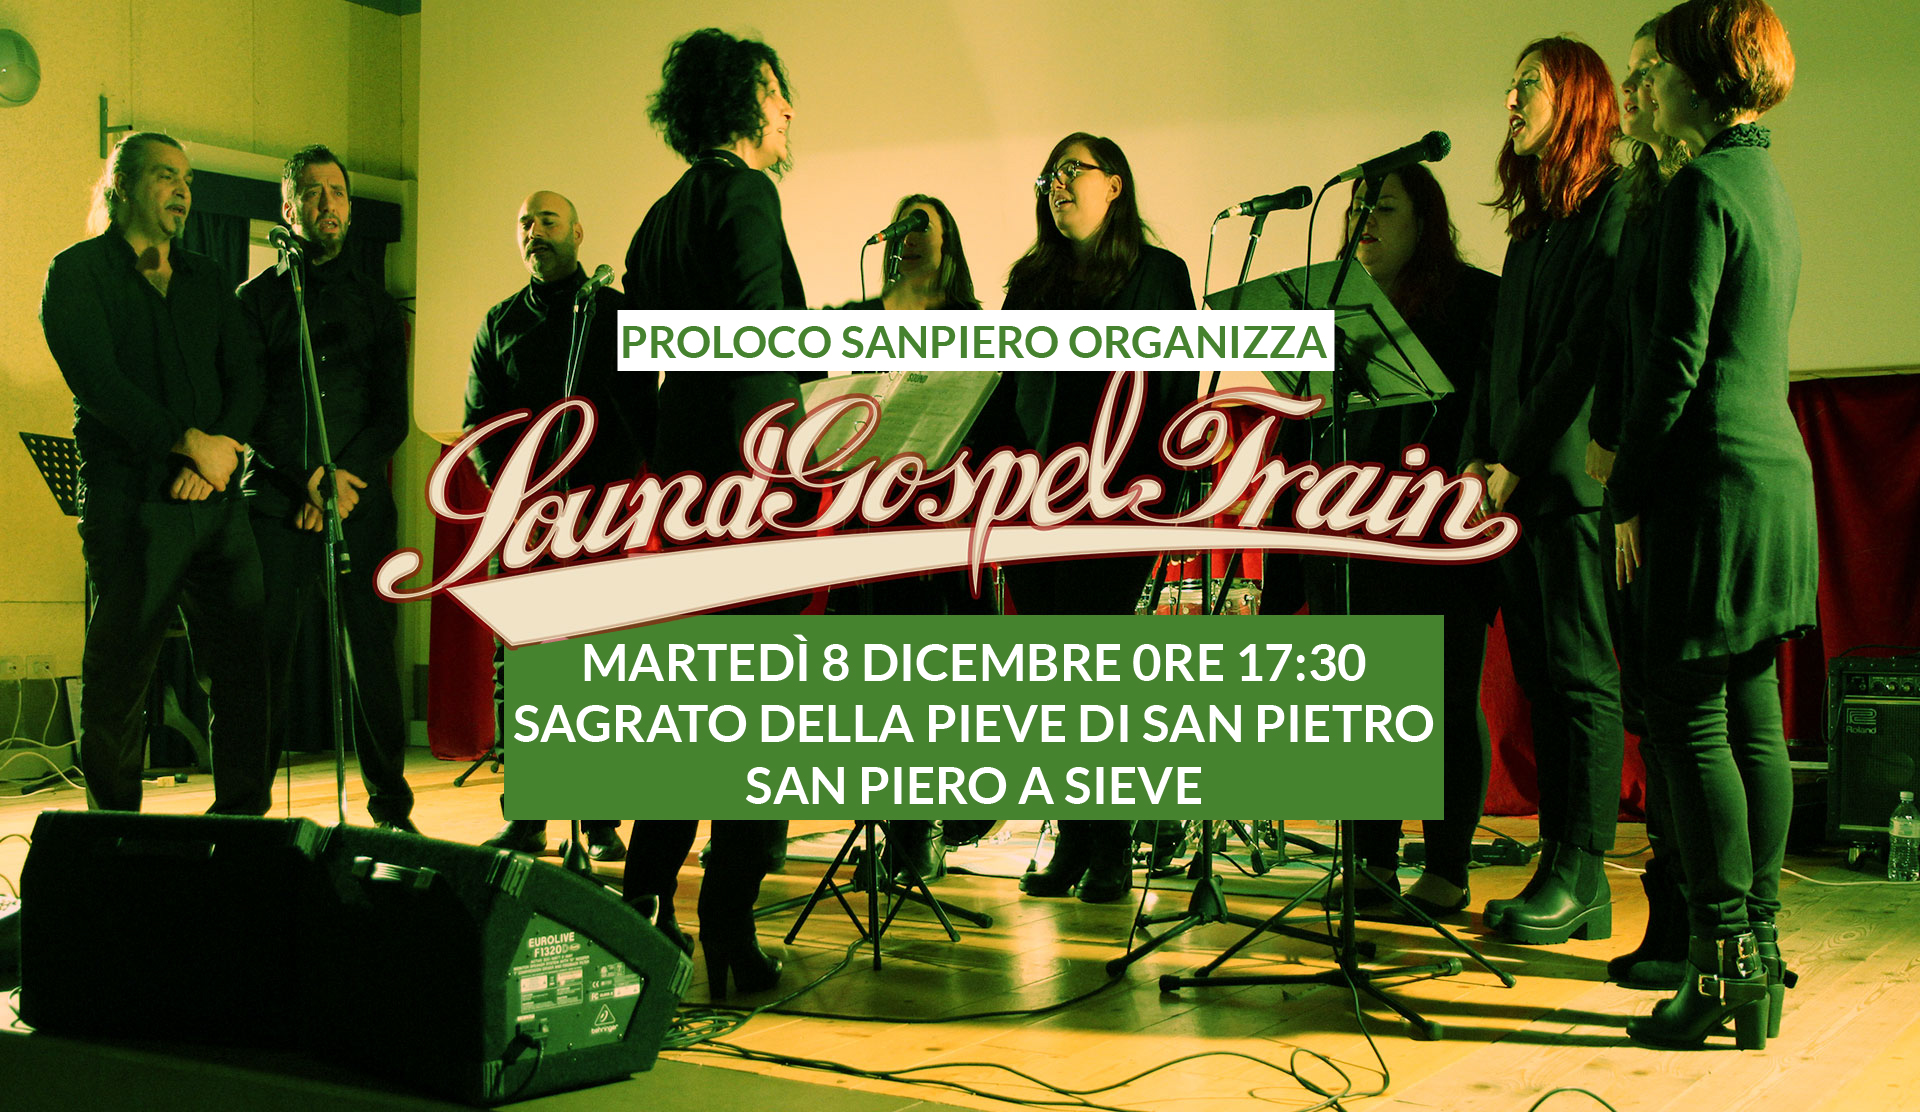 Proloco di San Piero a Sieve organizza concerto Gospel con SoundGospelTrain Sagrato della Pieve di San Pietro 8 Dicembre ore 17:30